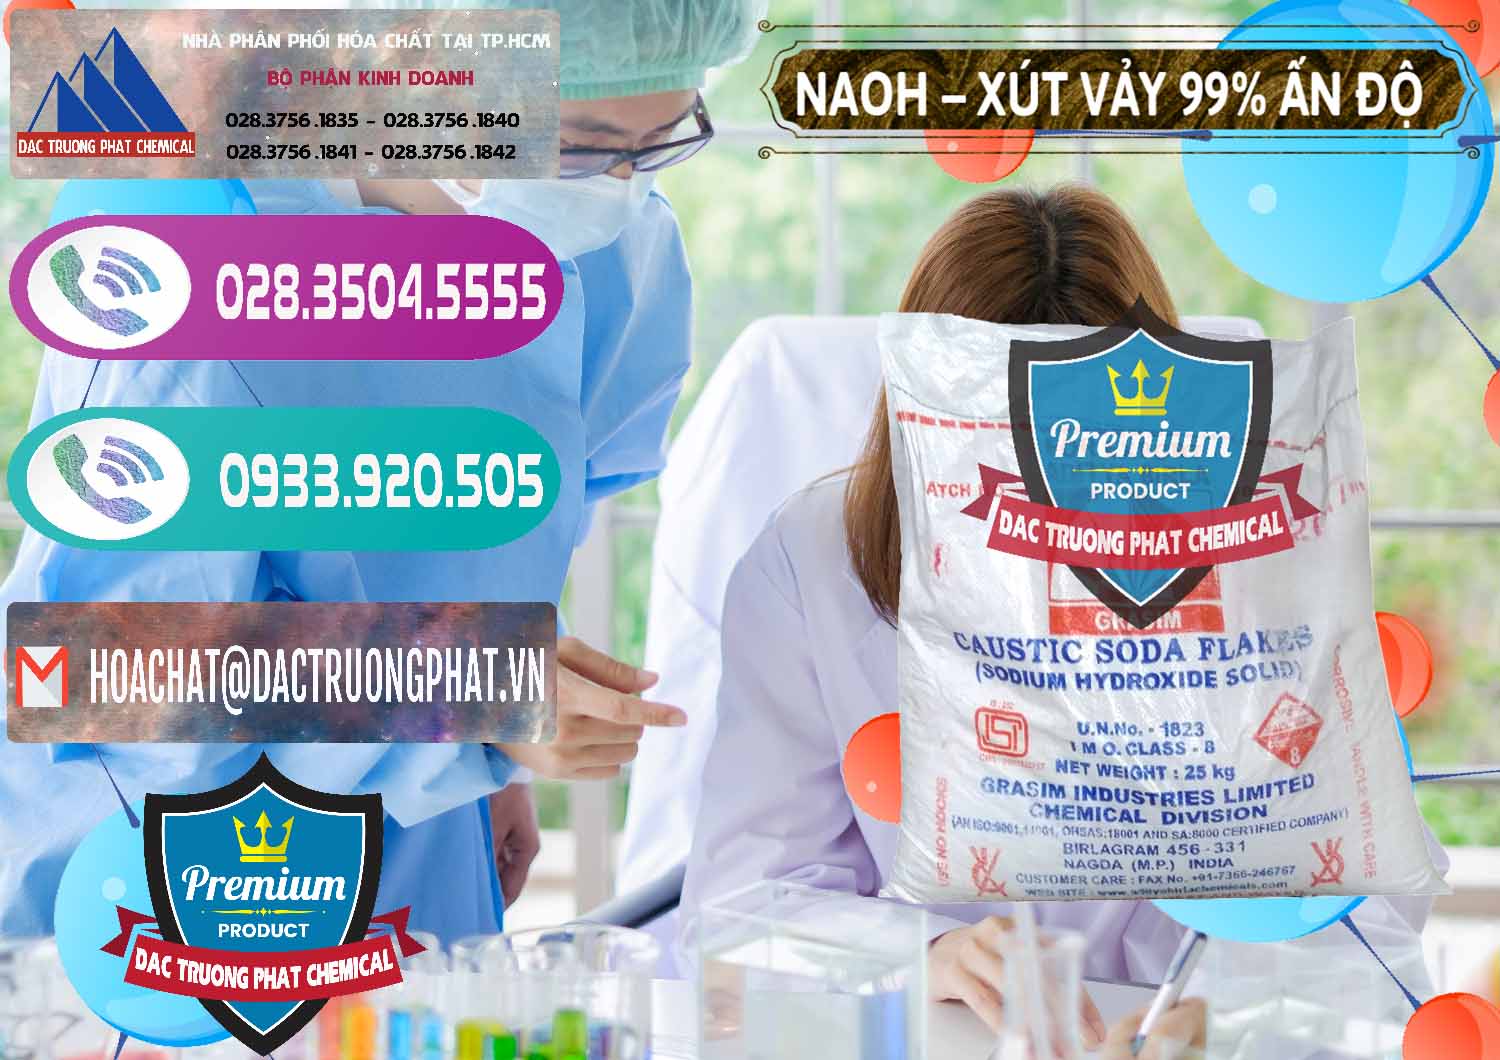 Chuyên bán ( cung ứng ) Xút Vảy - NaOH Vảy 99% Aditya Birla Grasim Ấn Độ India - 0171 - Đơn vị cung cấp - kinh doanh hóa chất tại TP.HCM - hoachatxulynuoc.com